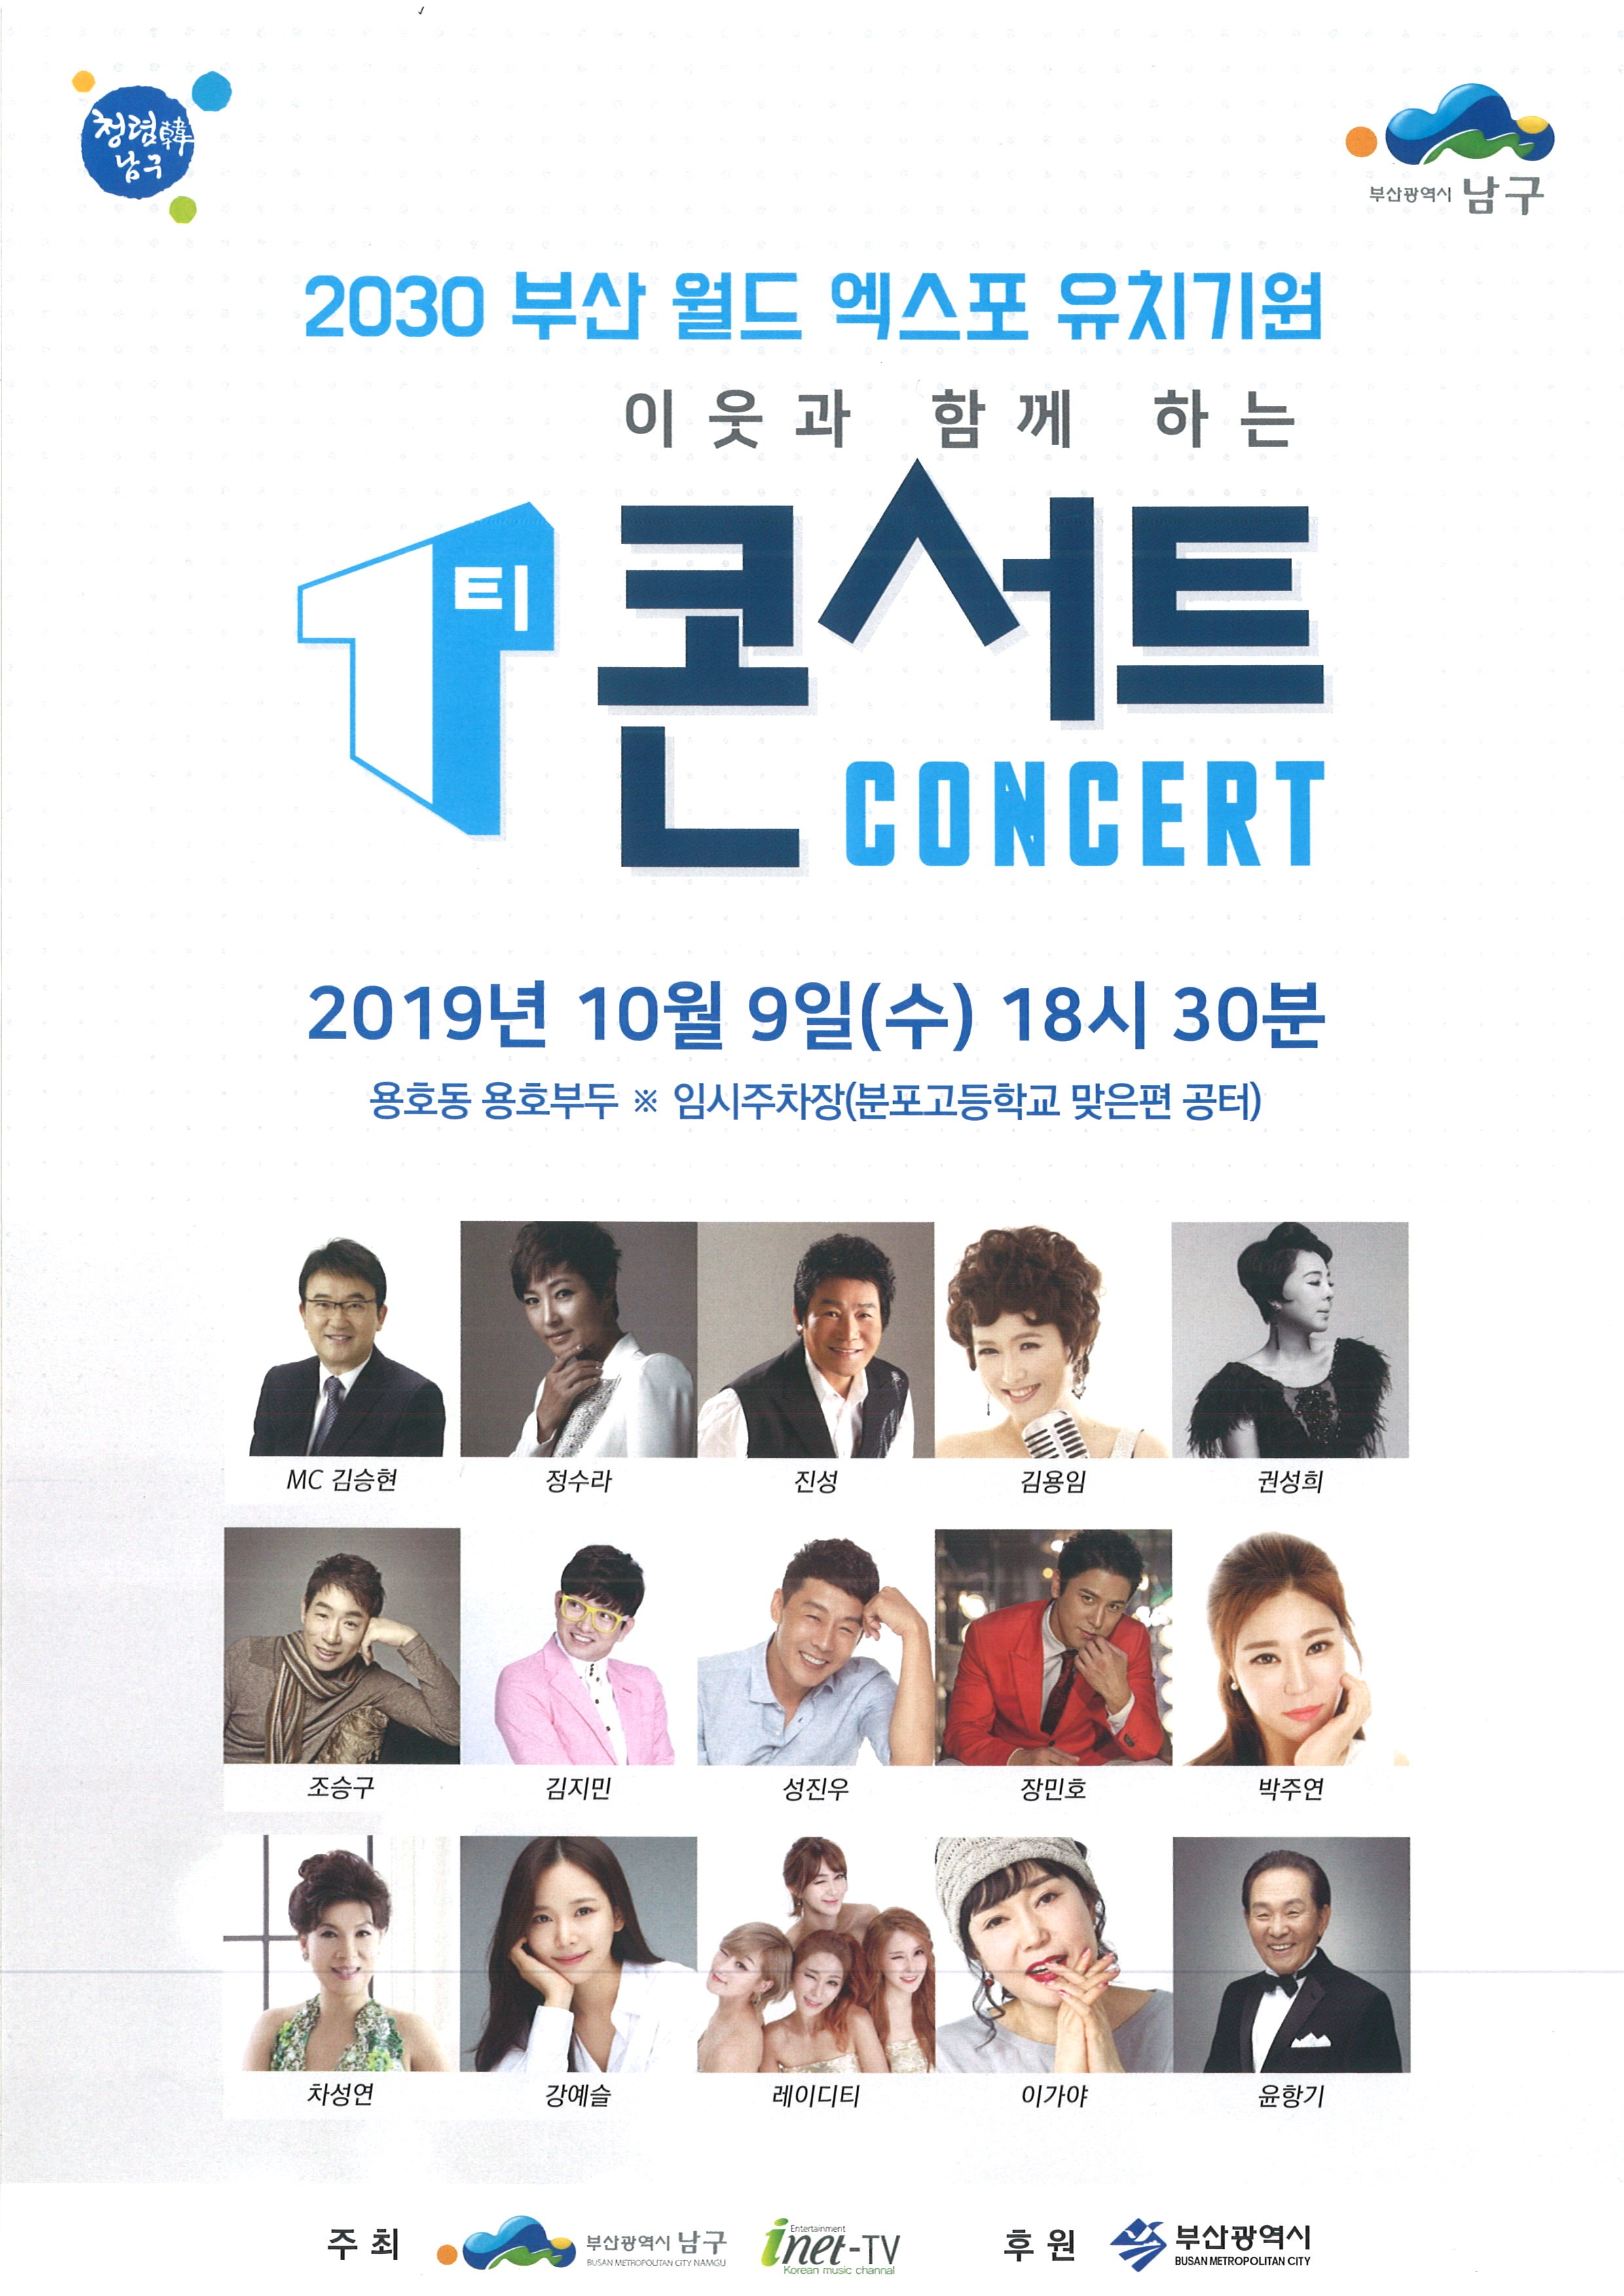 2030 부산월드엑스포 유치 기원 이웃과 함께하는 T 콘서트 개최0